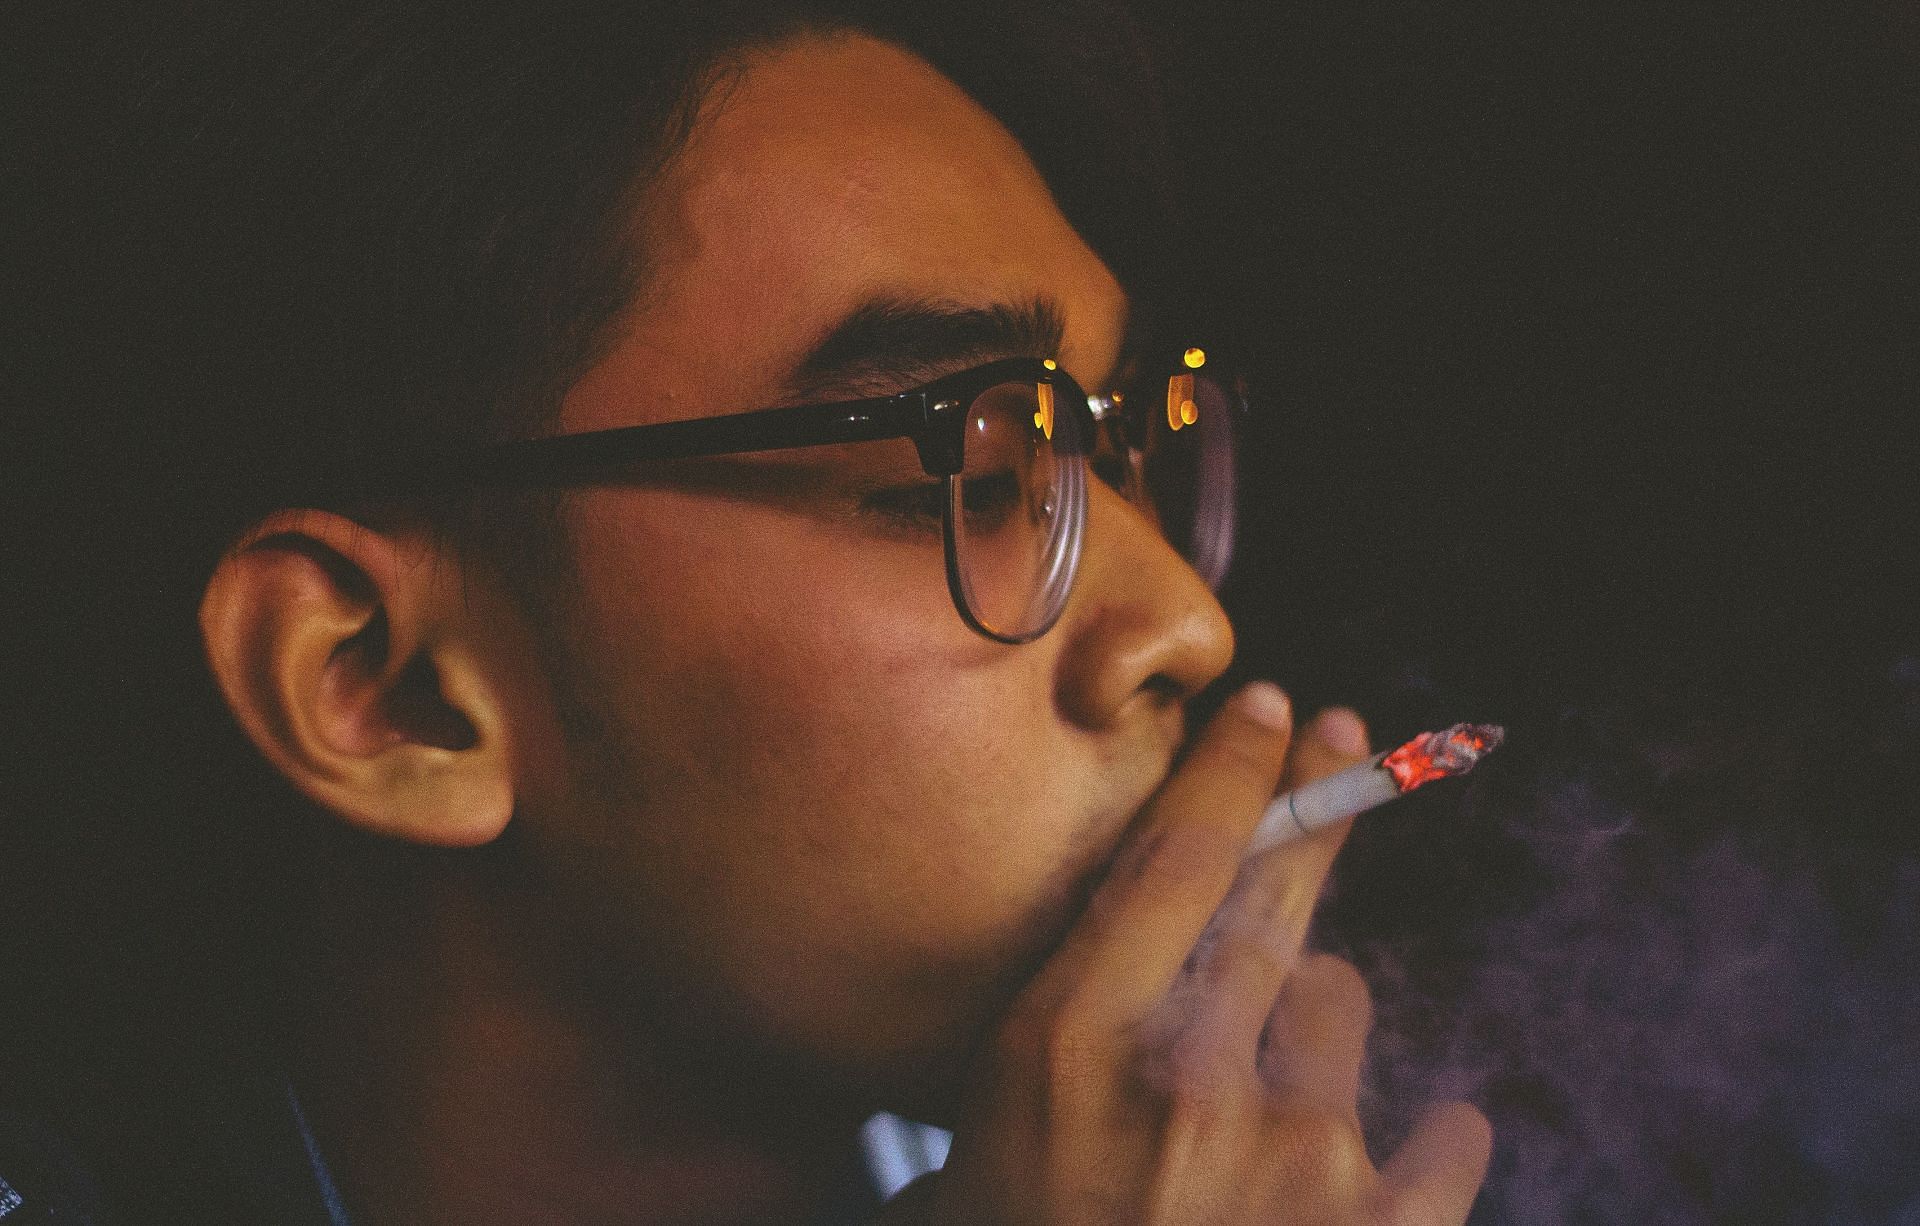 Nicotine is harmful for brain. (Image via Unsplash/ Bin Thieu)